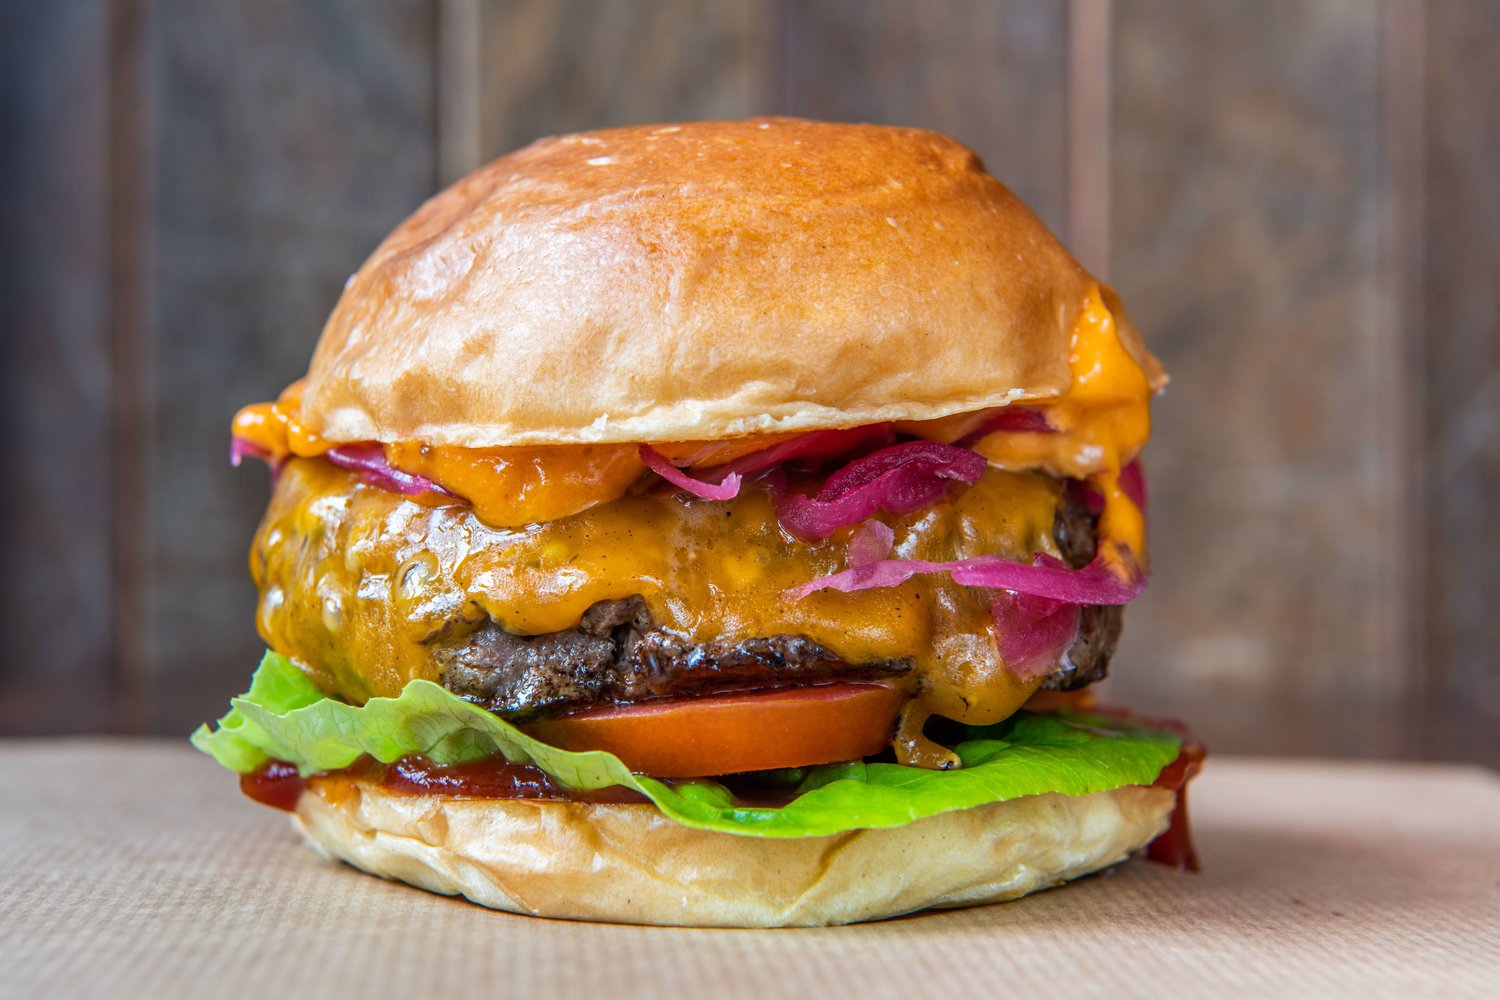 Patty & Bun burgers - Ari Gold Cheeseburger